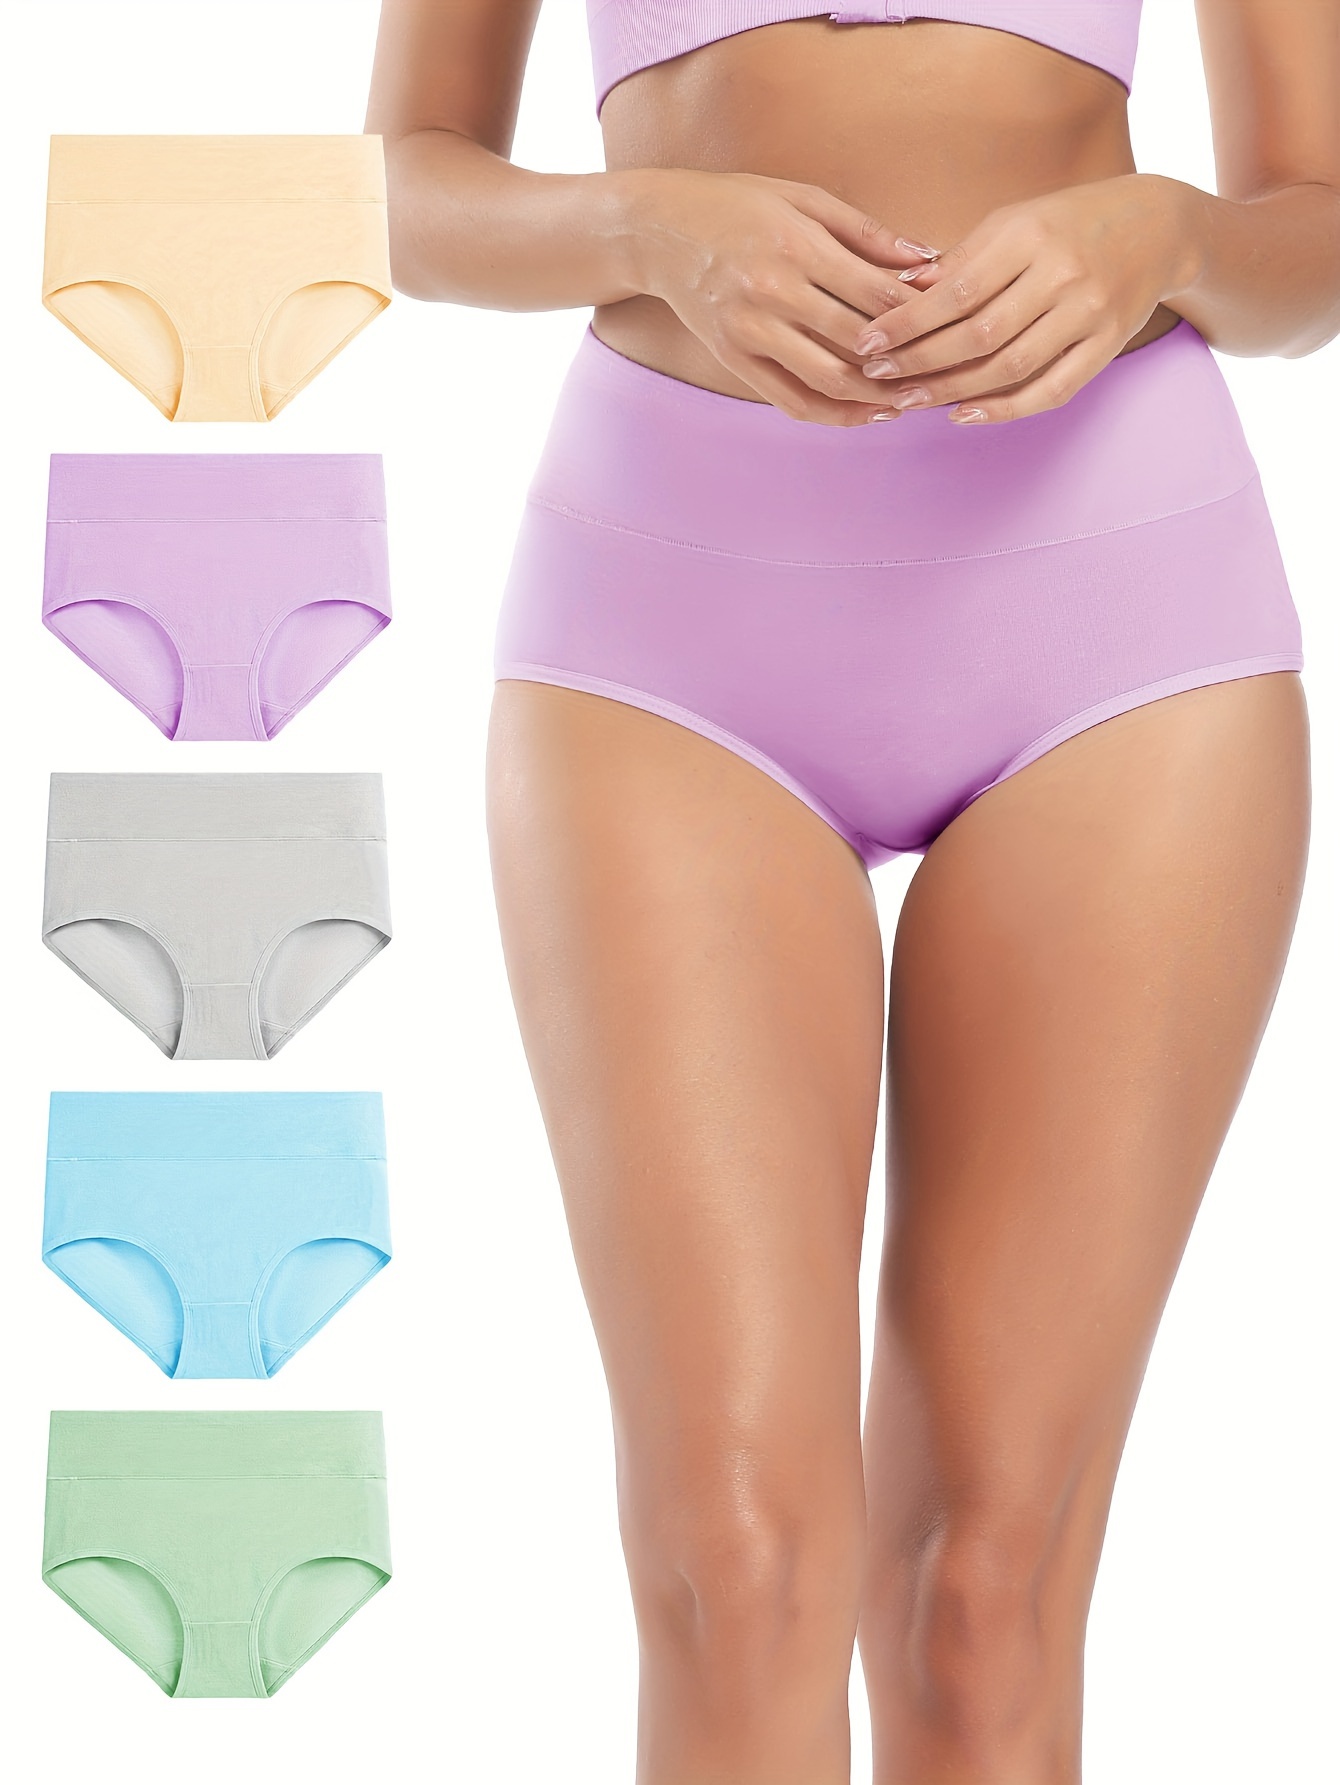 FallSweet 3 Pcs Women High Waist Panties Cotton Underwear Solid Color  Comfortable Underpants Plus Size lingerie M-XXXL